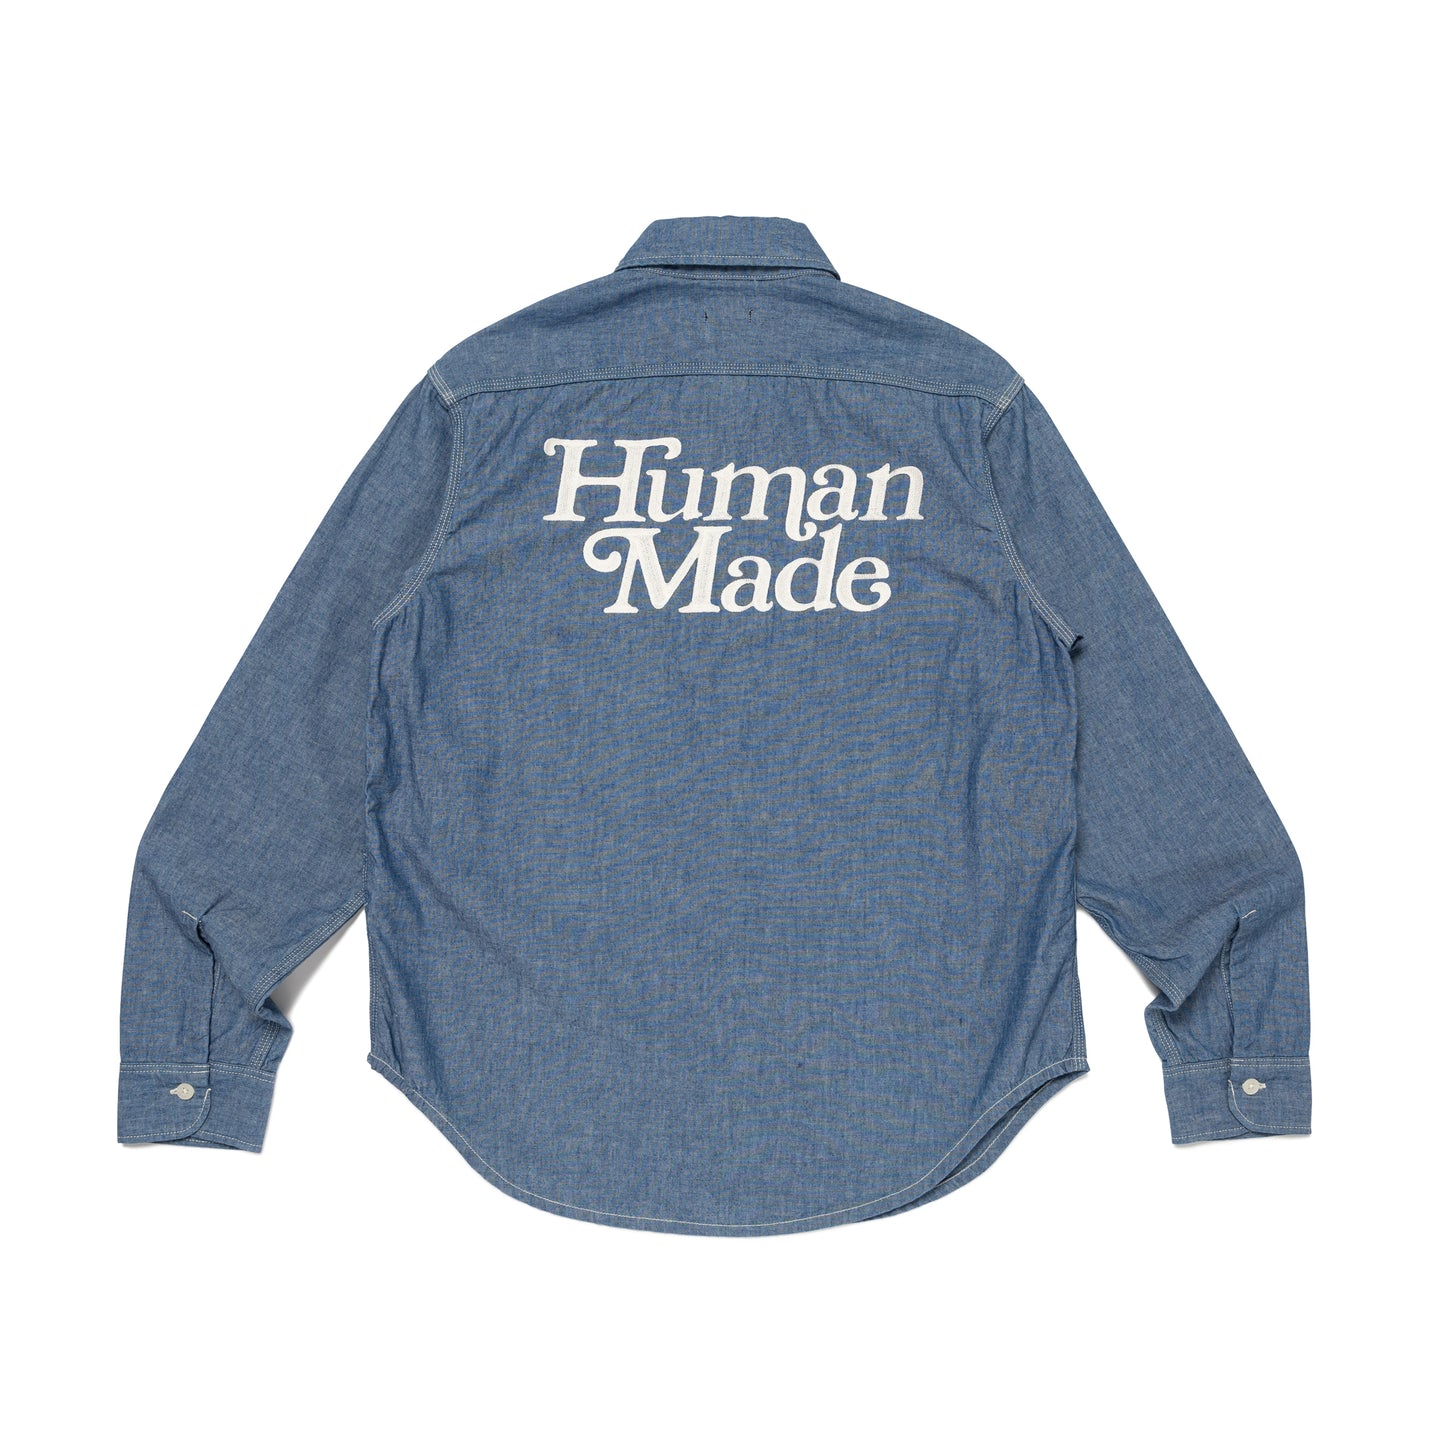 19,270円Human Made - Chambray Work Shirt